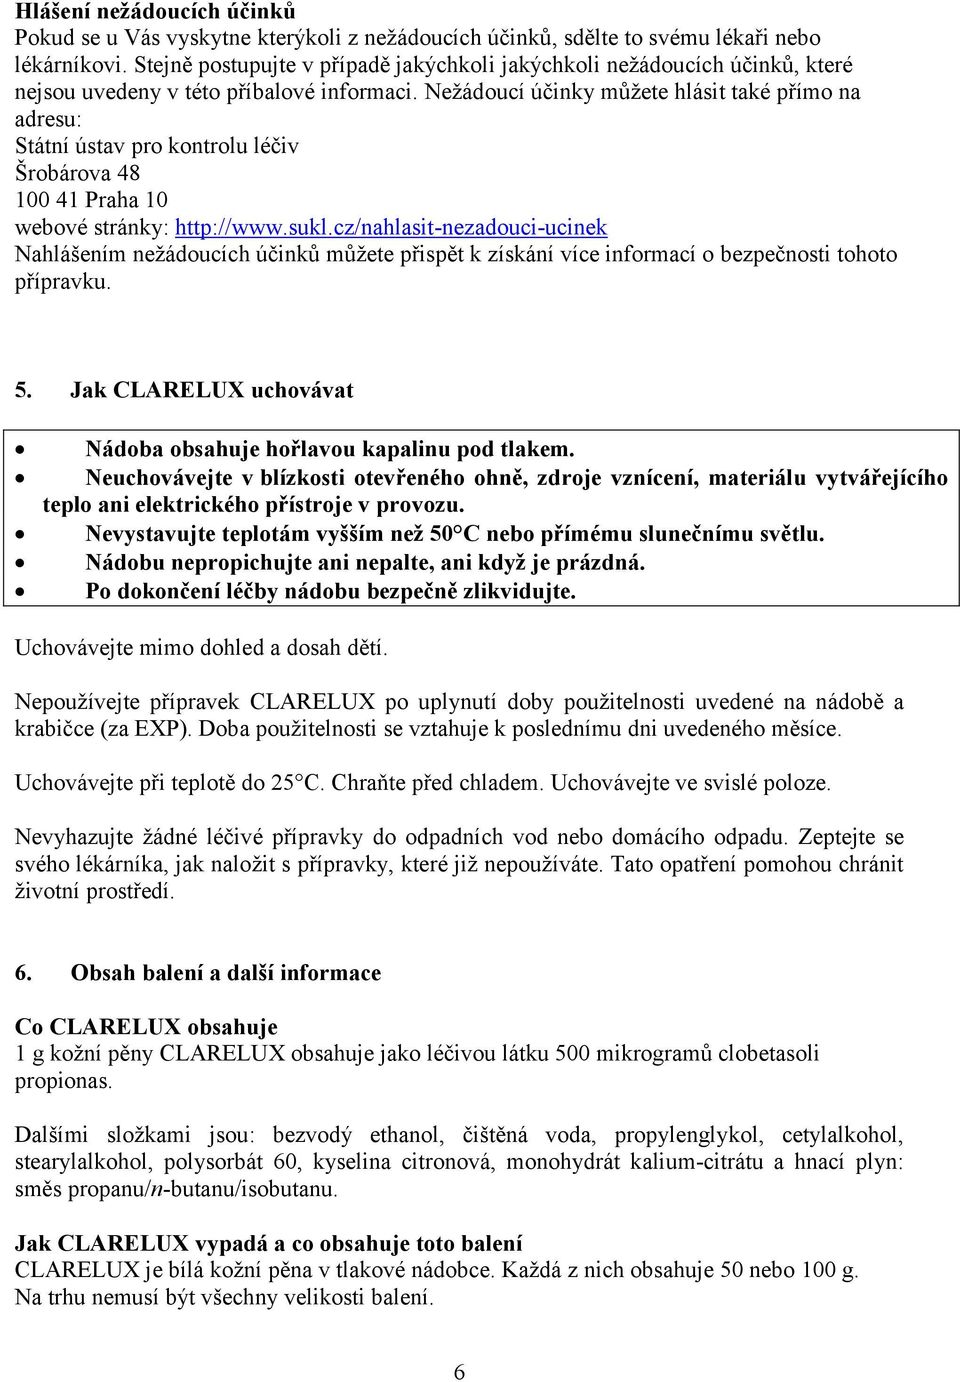 Nežádoucí účinky můžete hlásit také přímo na adresu: Státní ústav pro kontrolu léčiv Šrobárova 48 100 41 Praha 10 webové stránky: http://www.sukl.